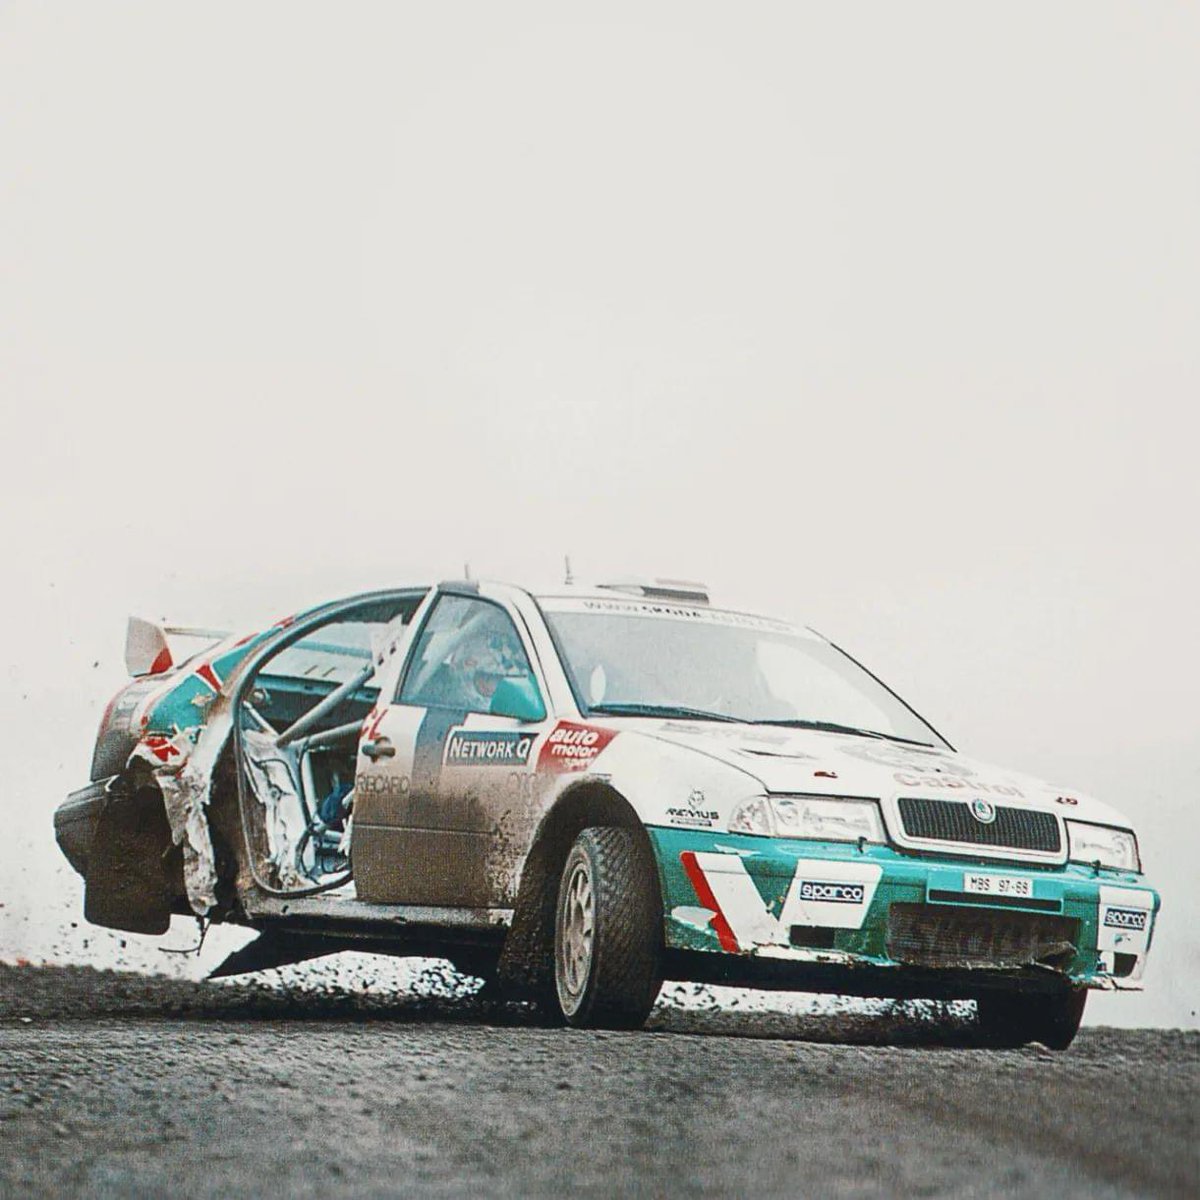 ⚠️ Armin Schwarz ⚠️
🏁 Rac Rally 99 🏁
🚀 Skoda Octavia WRC 🚀
↪️ Retired ↩️